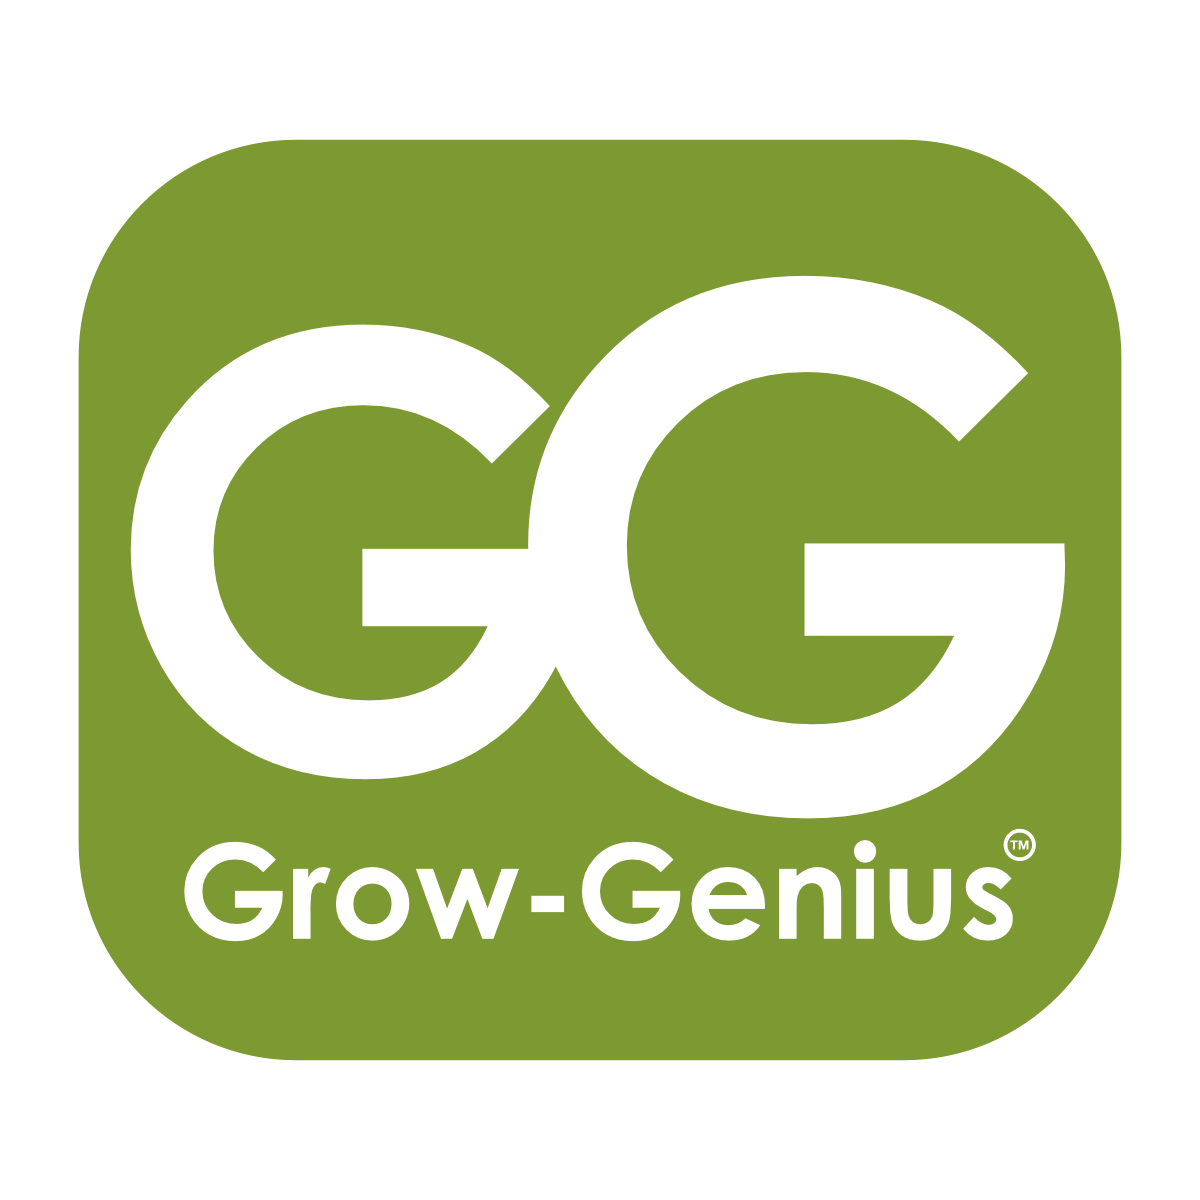 www.grow-genius.com